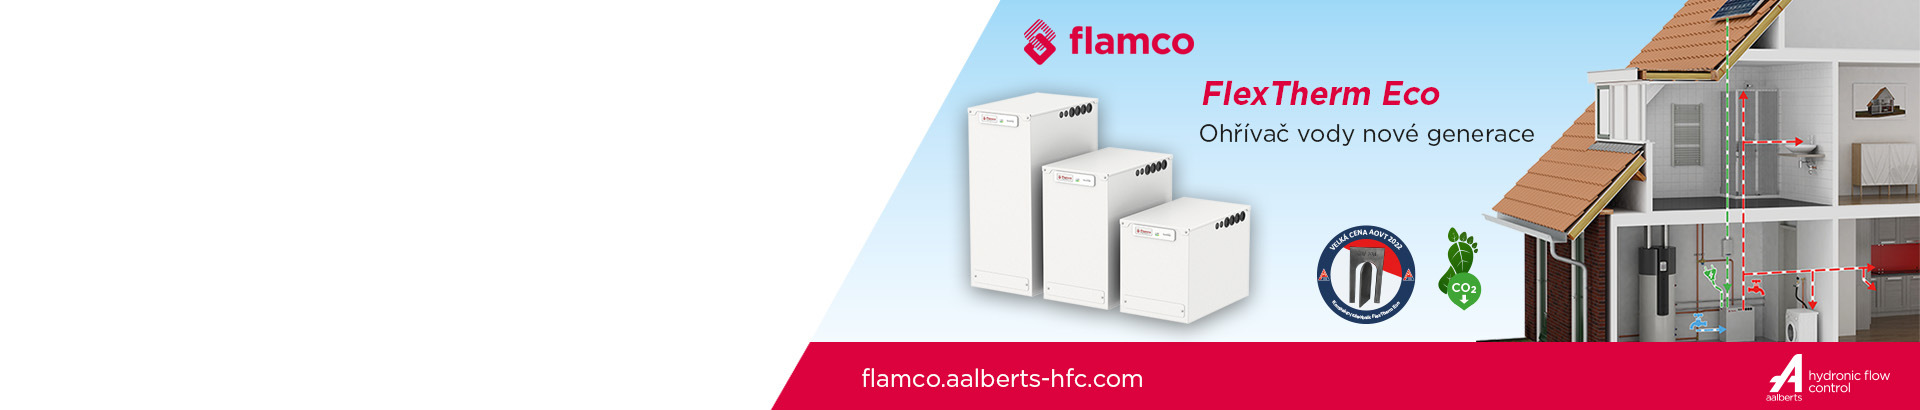 Flamco - Průtokový ohřívač FLEXTHERM ECO